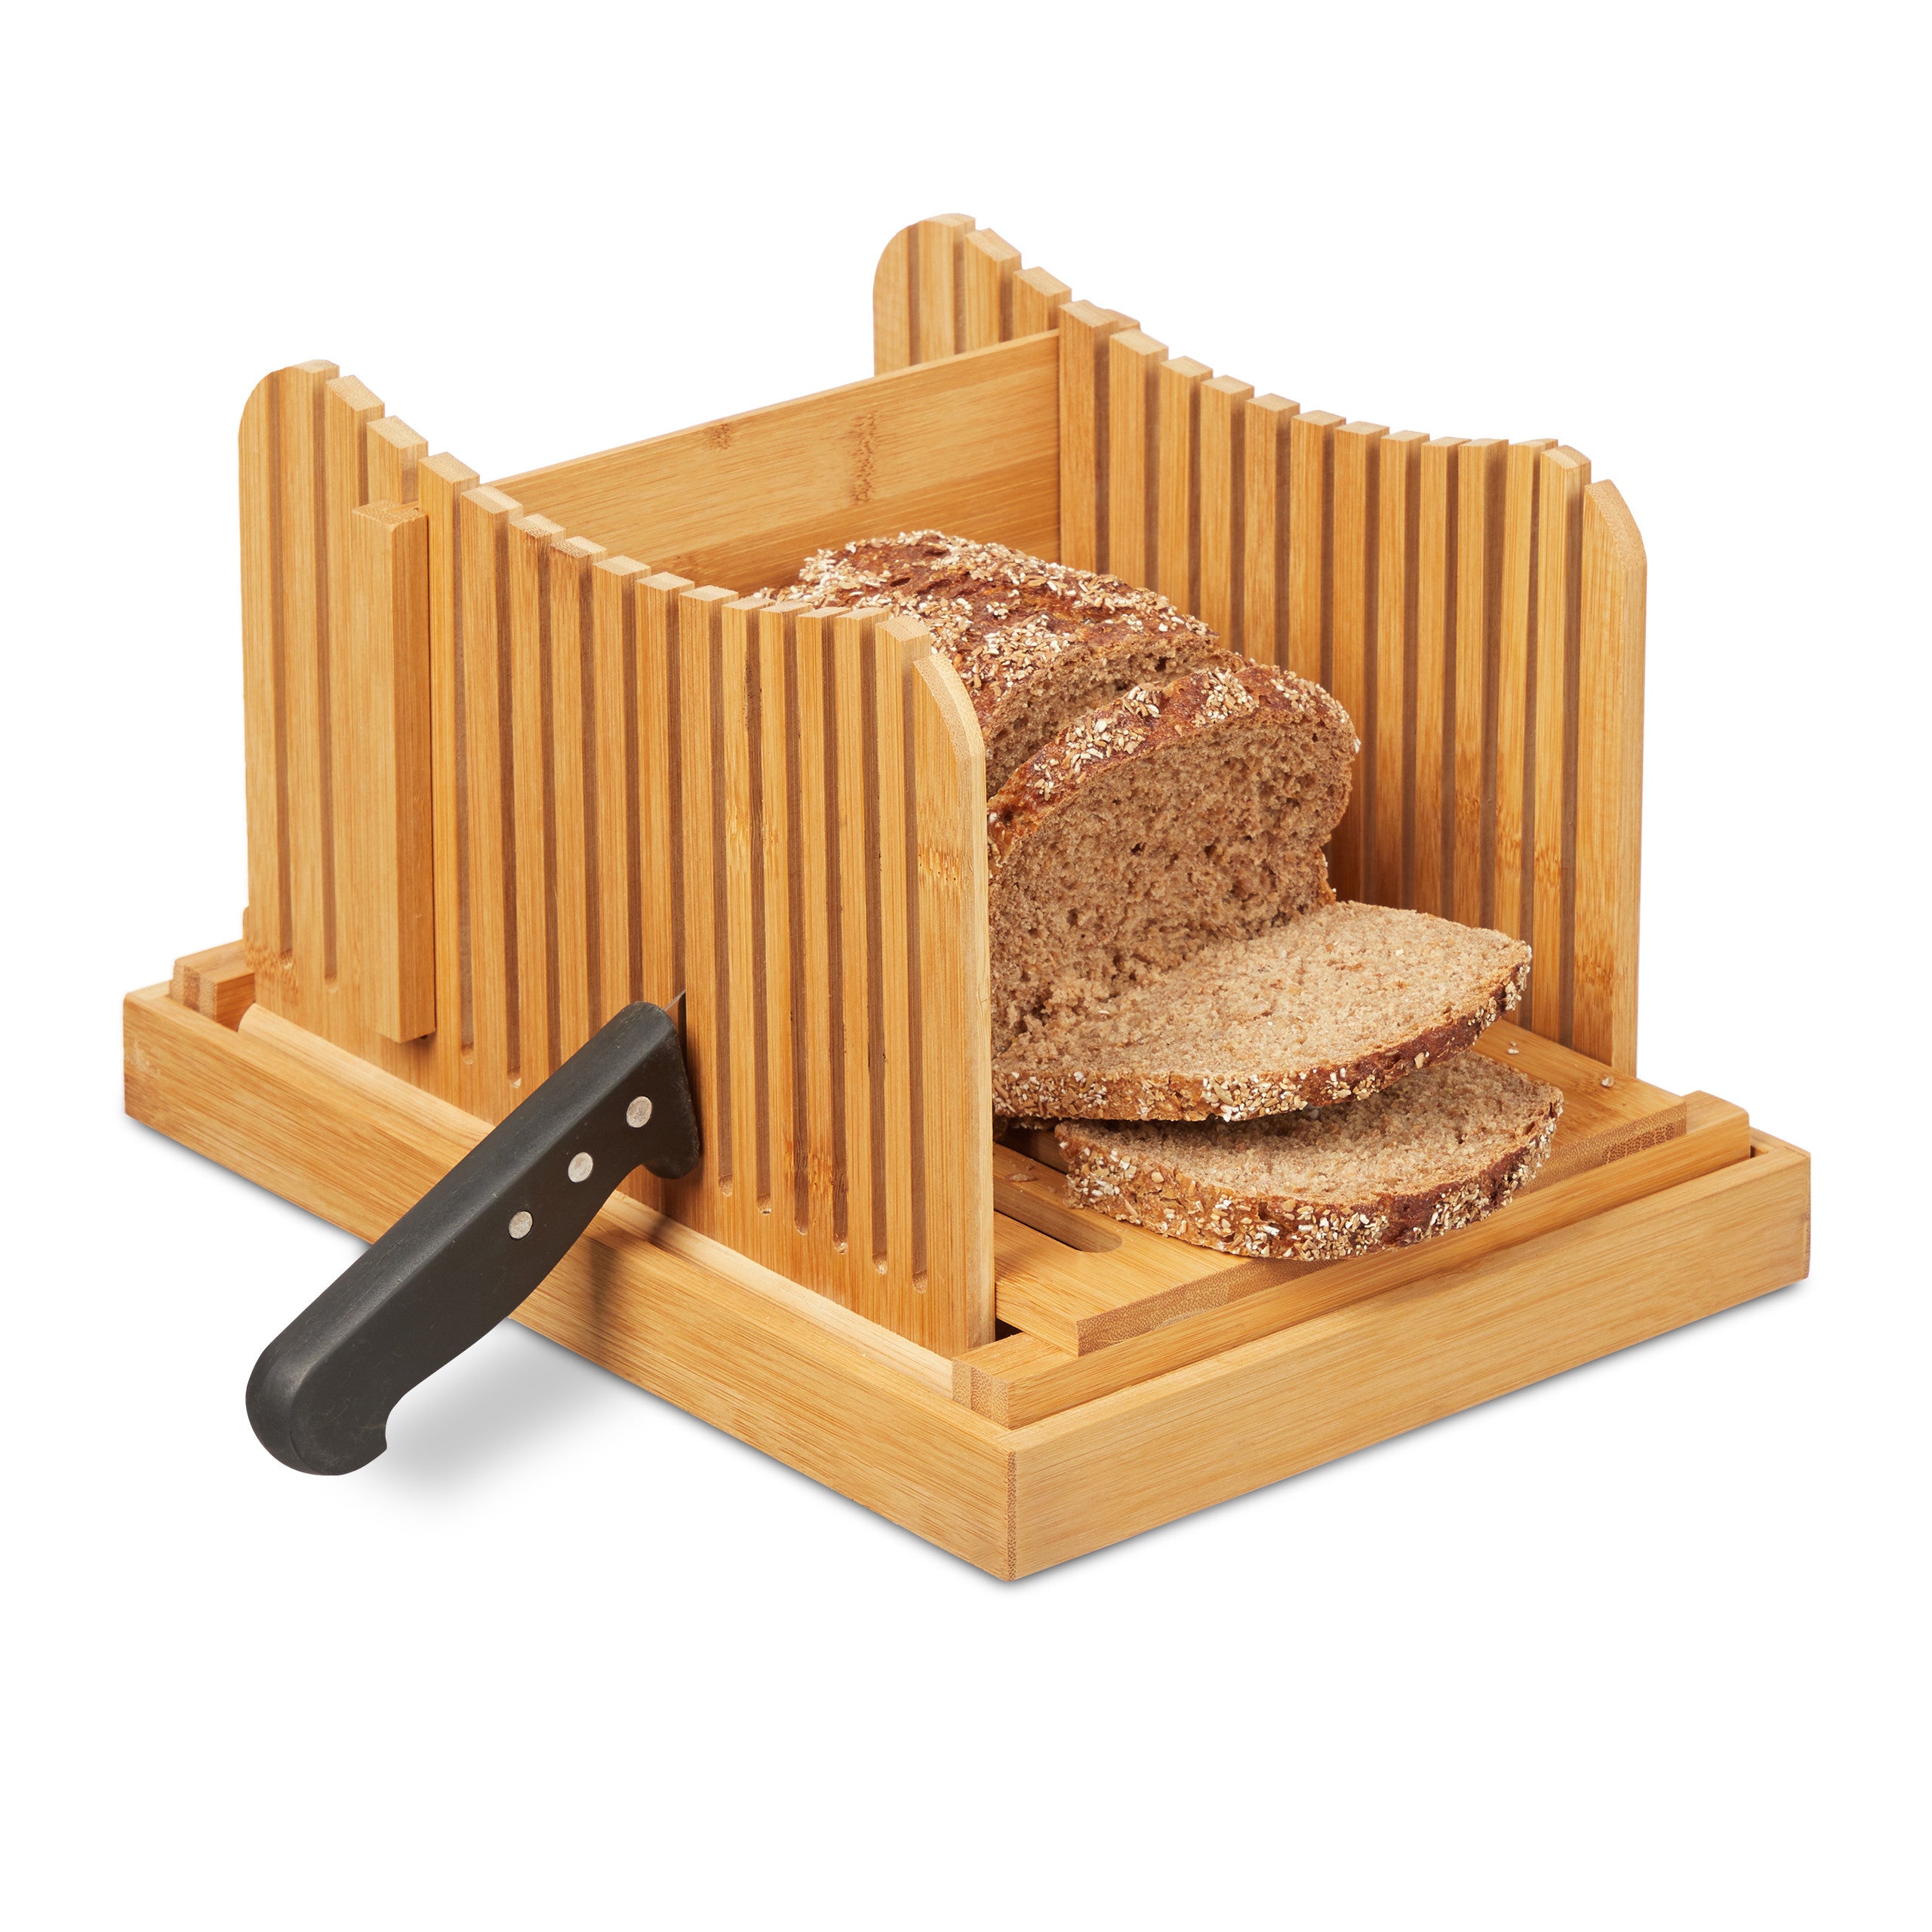 pain compact 3 épaisseurs réglables pour pain fait maison bagels gâteaux Trancheuse à pain en bambou – Réglable pain guide de tranchage avec ramasse-miettes toast pliable 